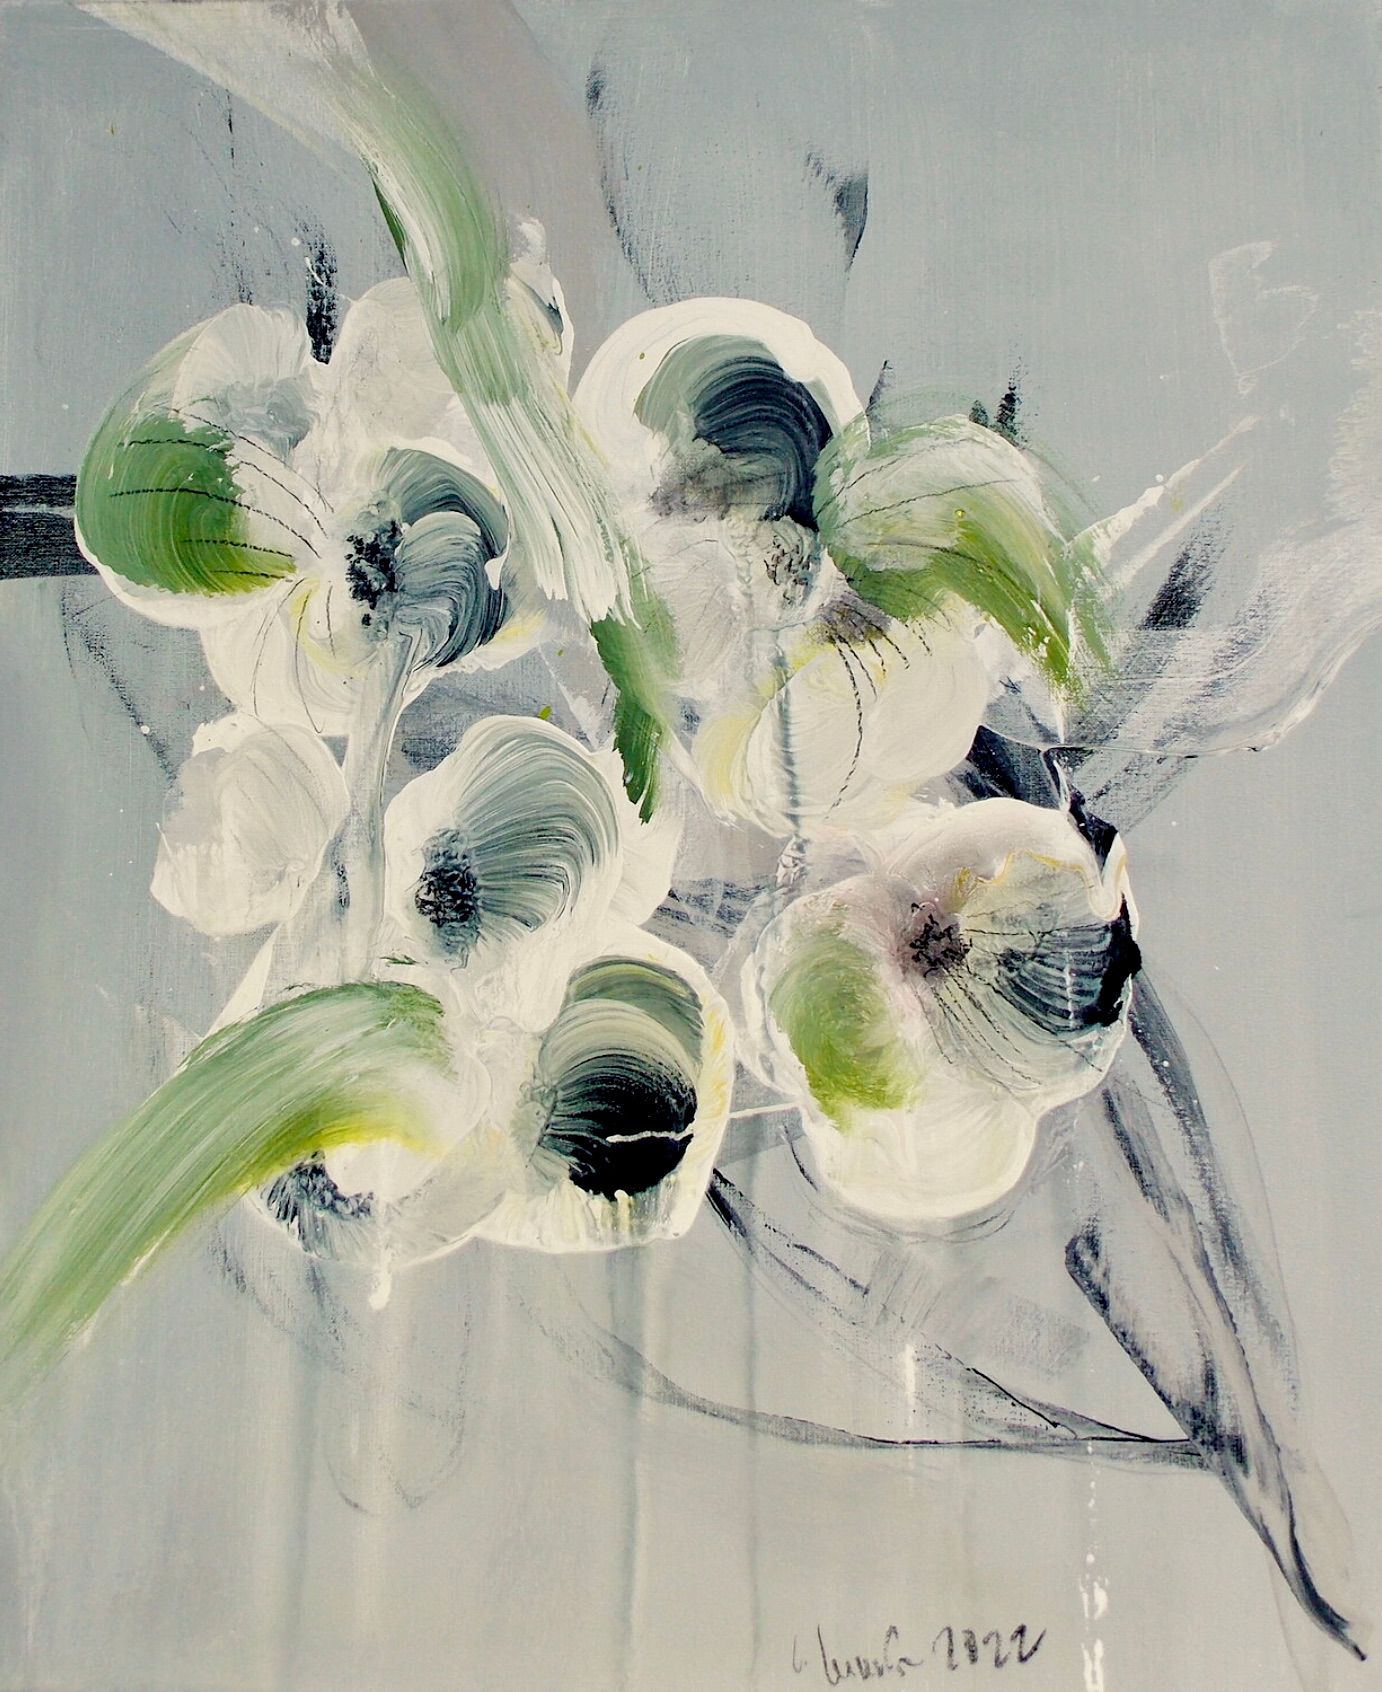 在克里斯塔-哈克的 "Blumenrausch 1 "表现主义抽象花卉画中，米色、绿色和黑色占主导地位。